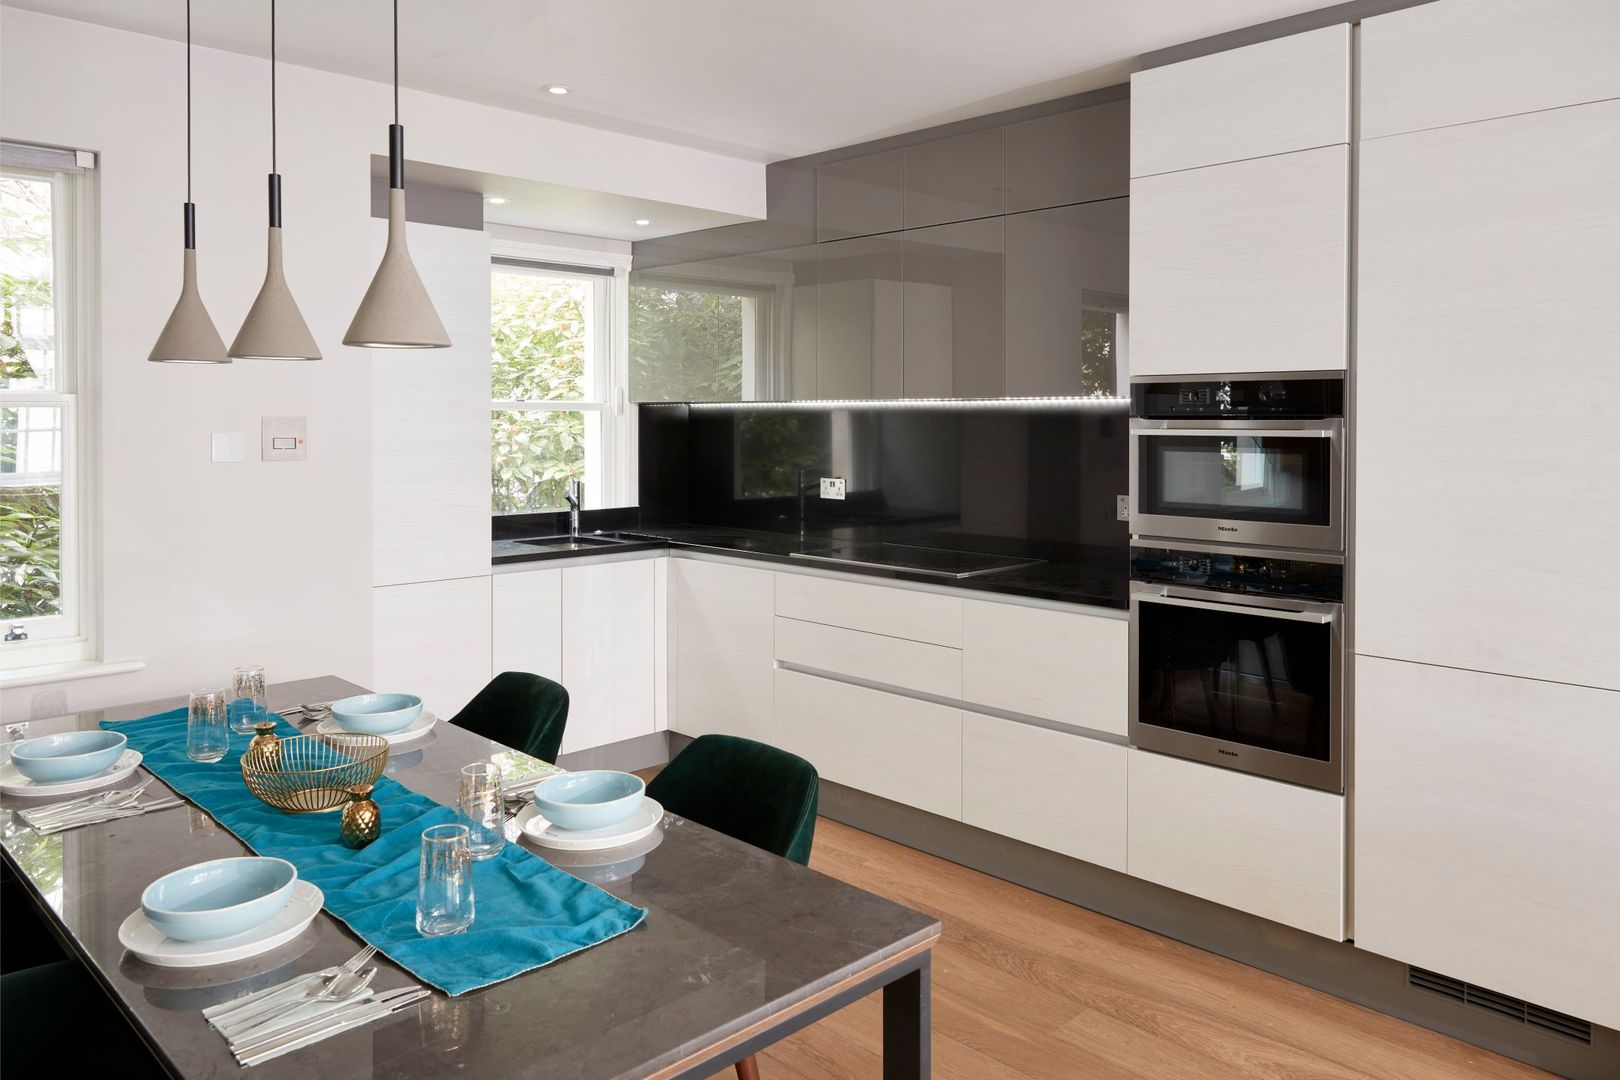 Smart kitchen and dining area Urbanist Architecture Cozinhas embutidas Metal modern,kitchen